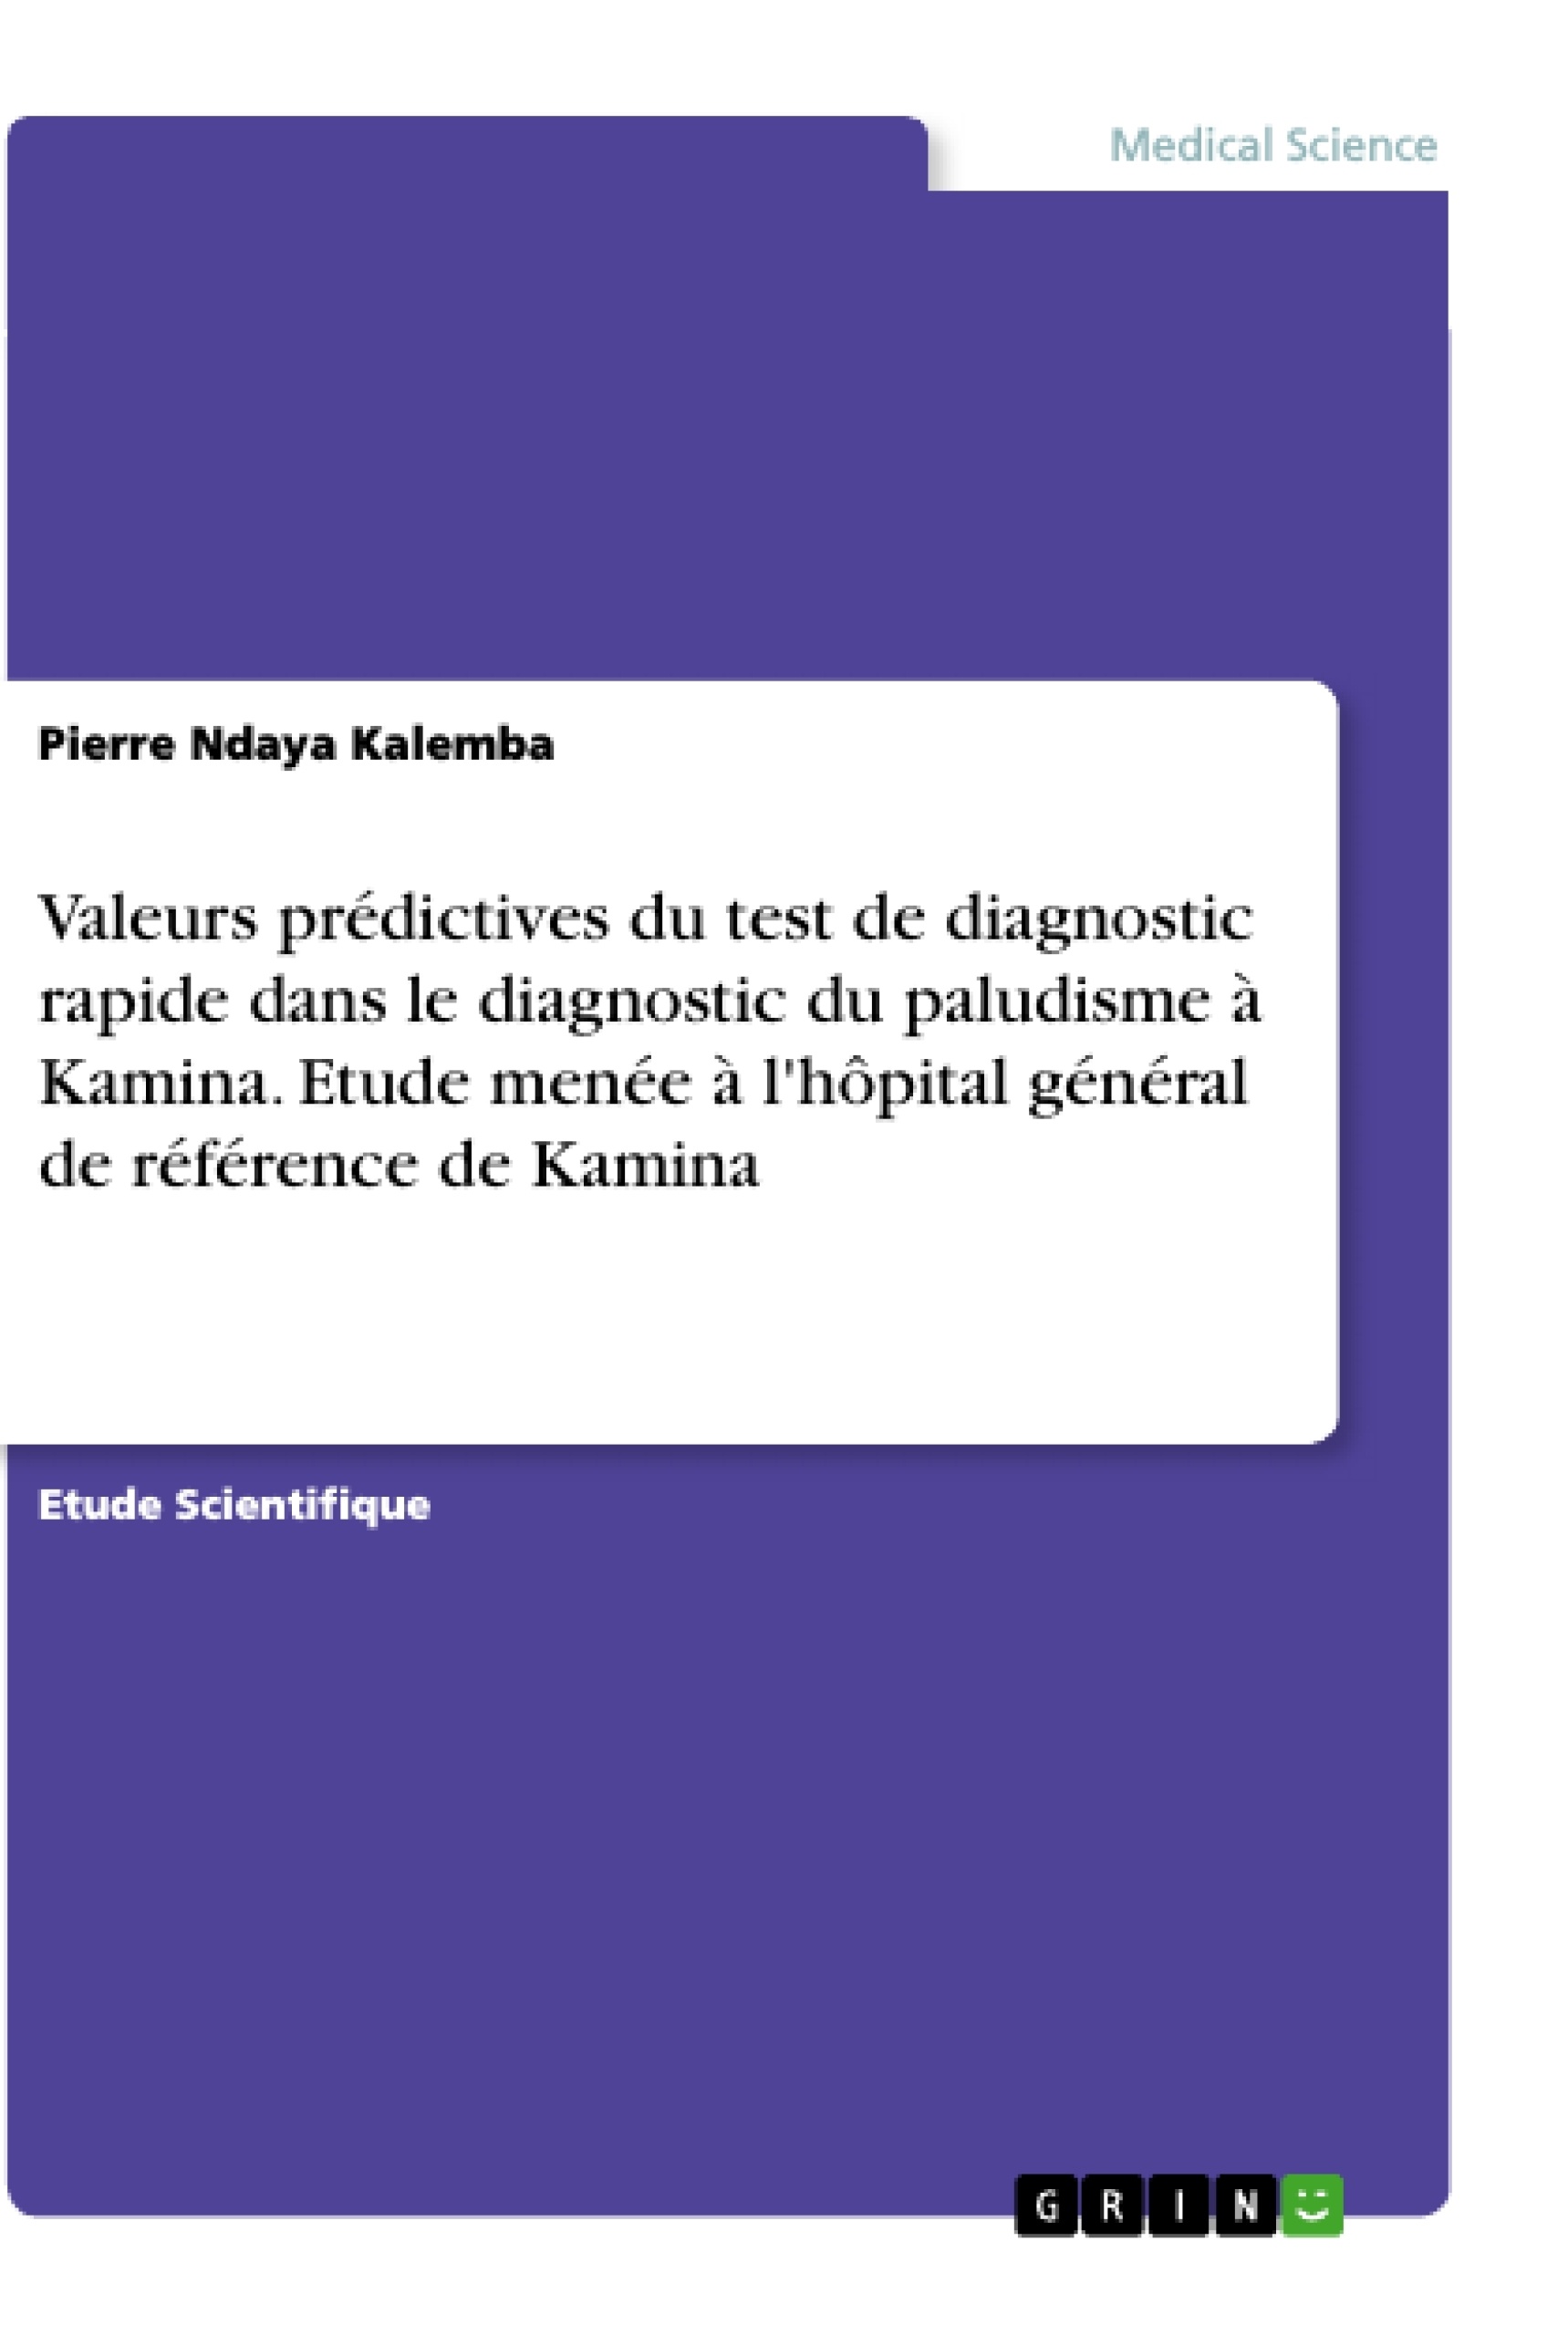 Titre: Valeurs prédictives du test de diagnostic rapide dans le diagnostic du paludisme à Kamina. Etude menée à l'hôpital général de référence de Kamina